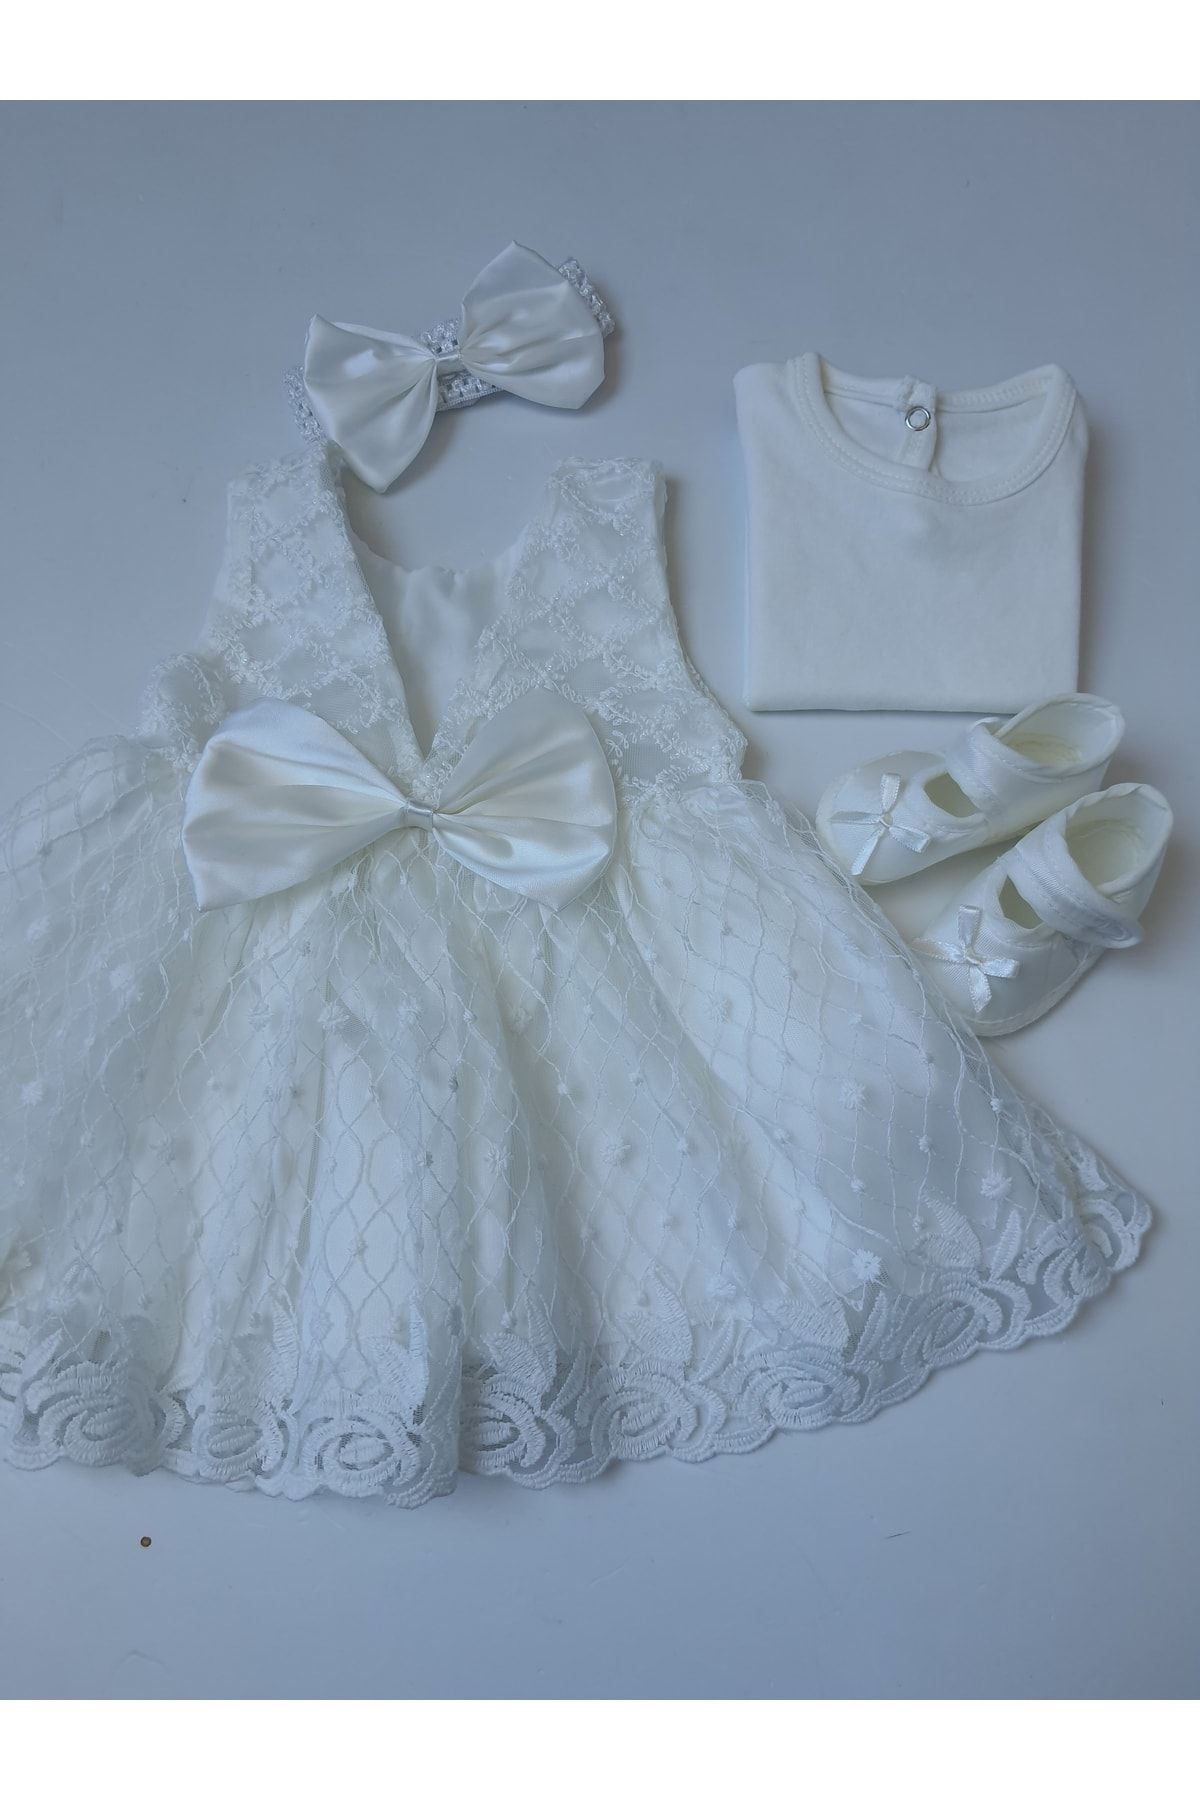 Petite Ponpon Baby Kız Bebek Mevlüt Takımı Kız Bebek Prenses Elbise Dantelli Elbise